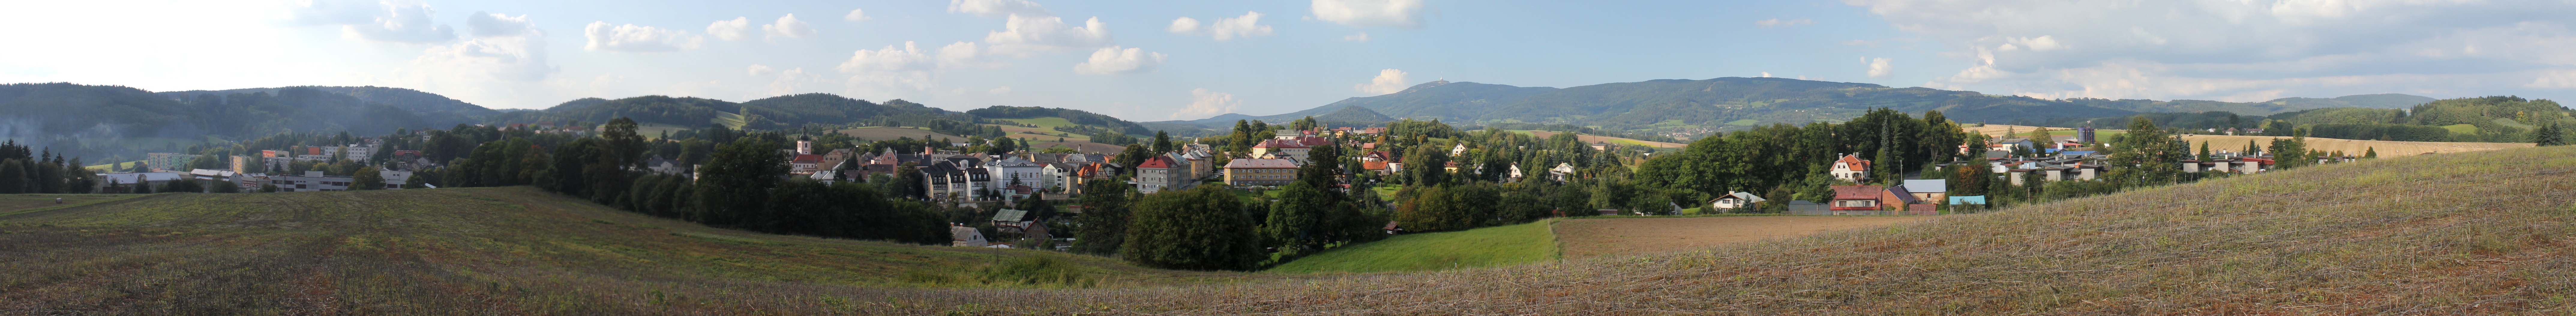 Český Dub (4) panorama.jpg